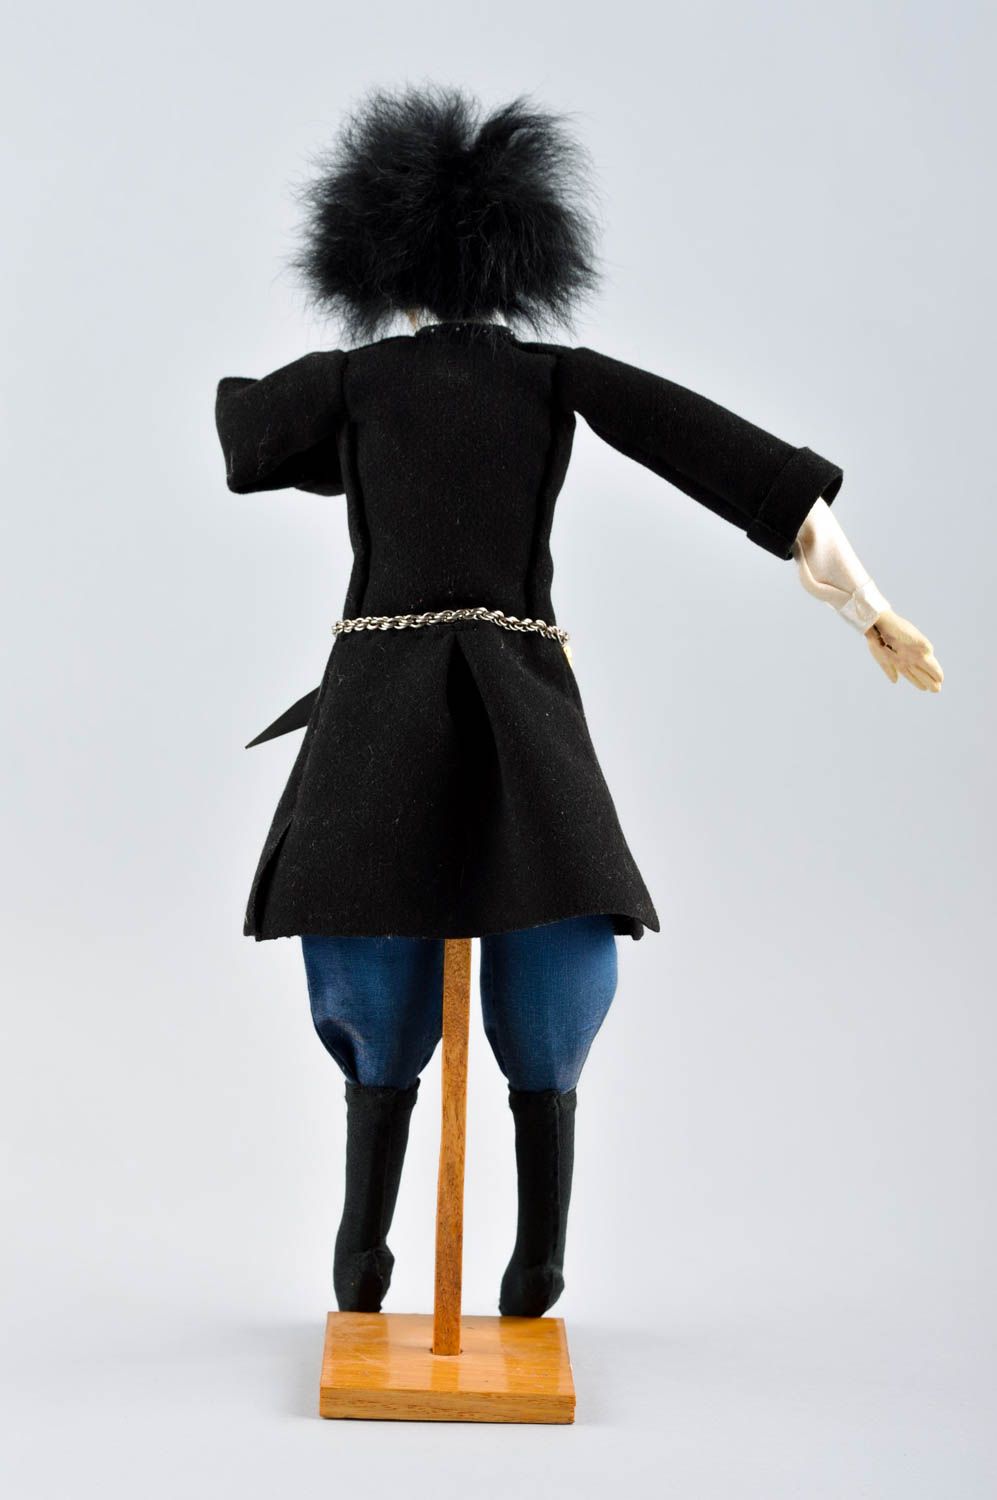 Авторская кукла игрушка ручной работы дизайнерская кукла оригинальная с мехом фото 4